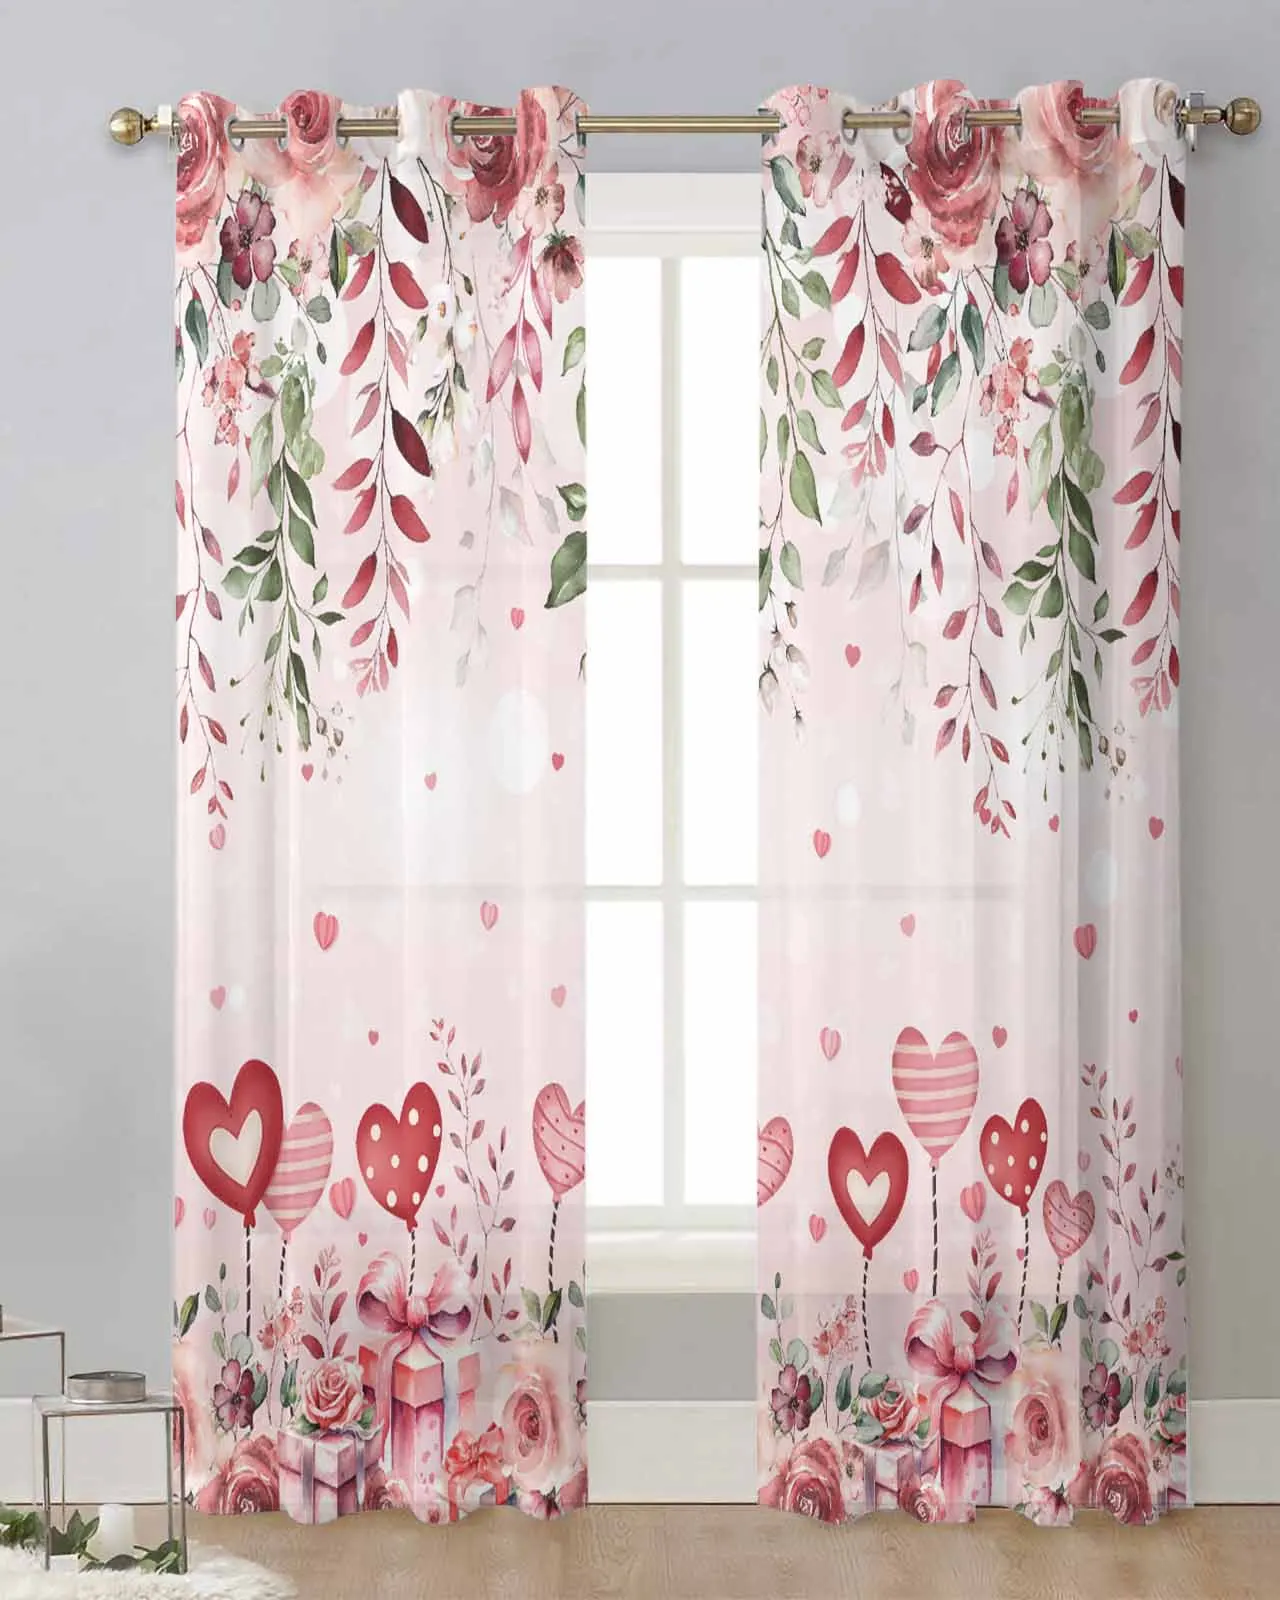 

Тюлевые шторы на окна в гостиную, занавески из вуали с люверсами в подарок на день Святого Валентина, с розами, листьями, цветами, цветами